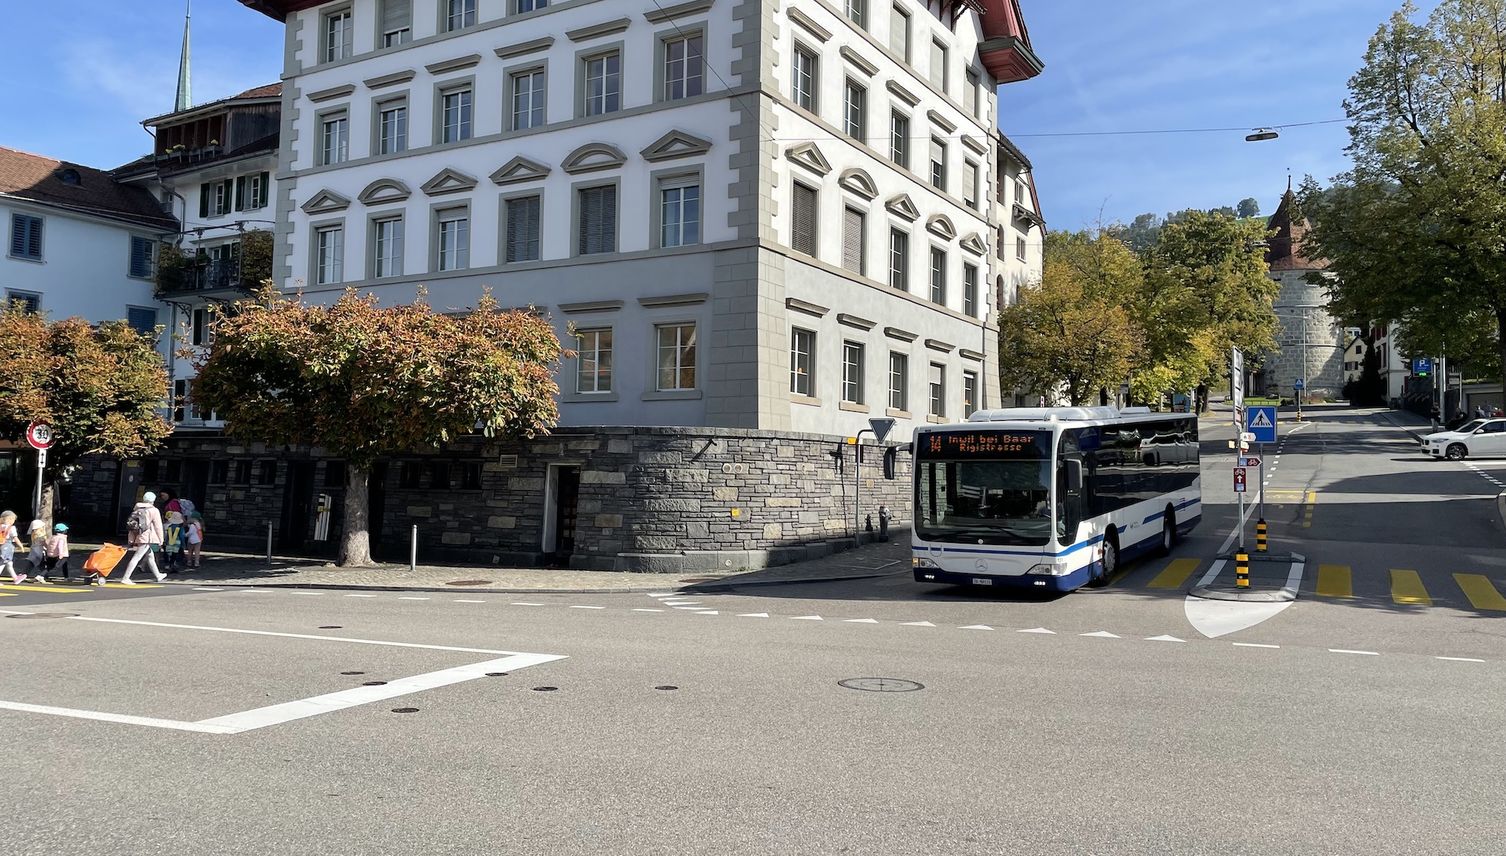 Tempo 30 in Zug: Stadtrat soll jetzt Klartext reden